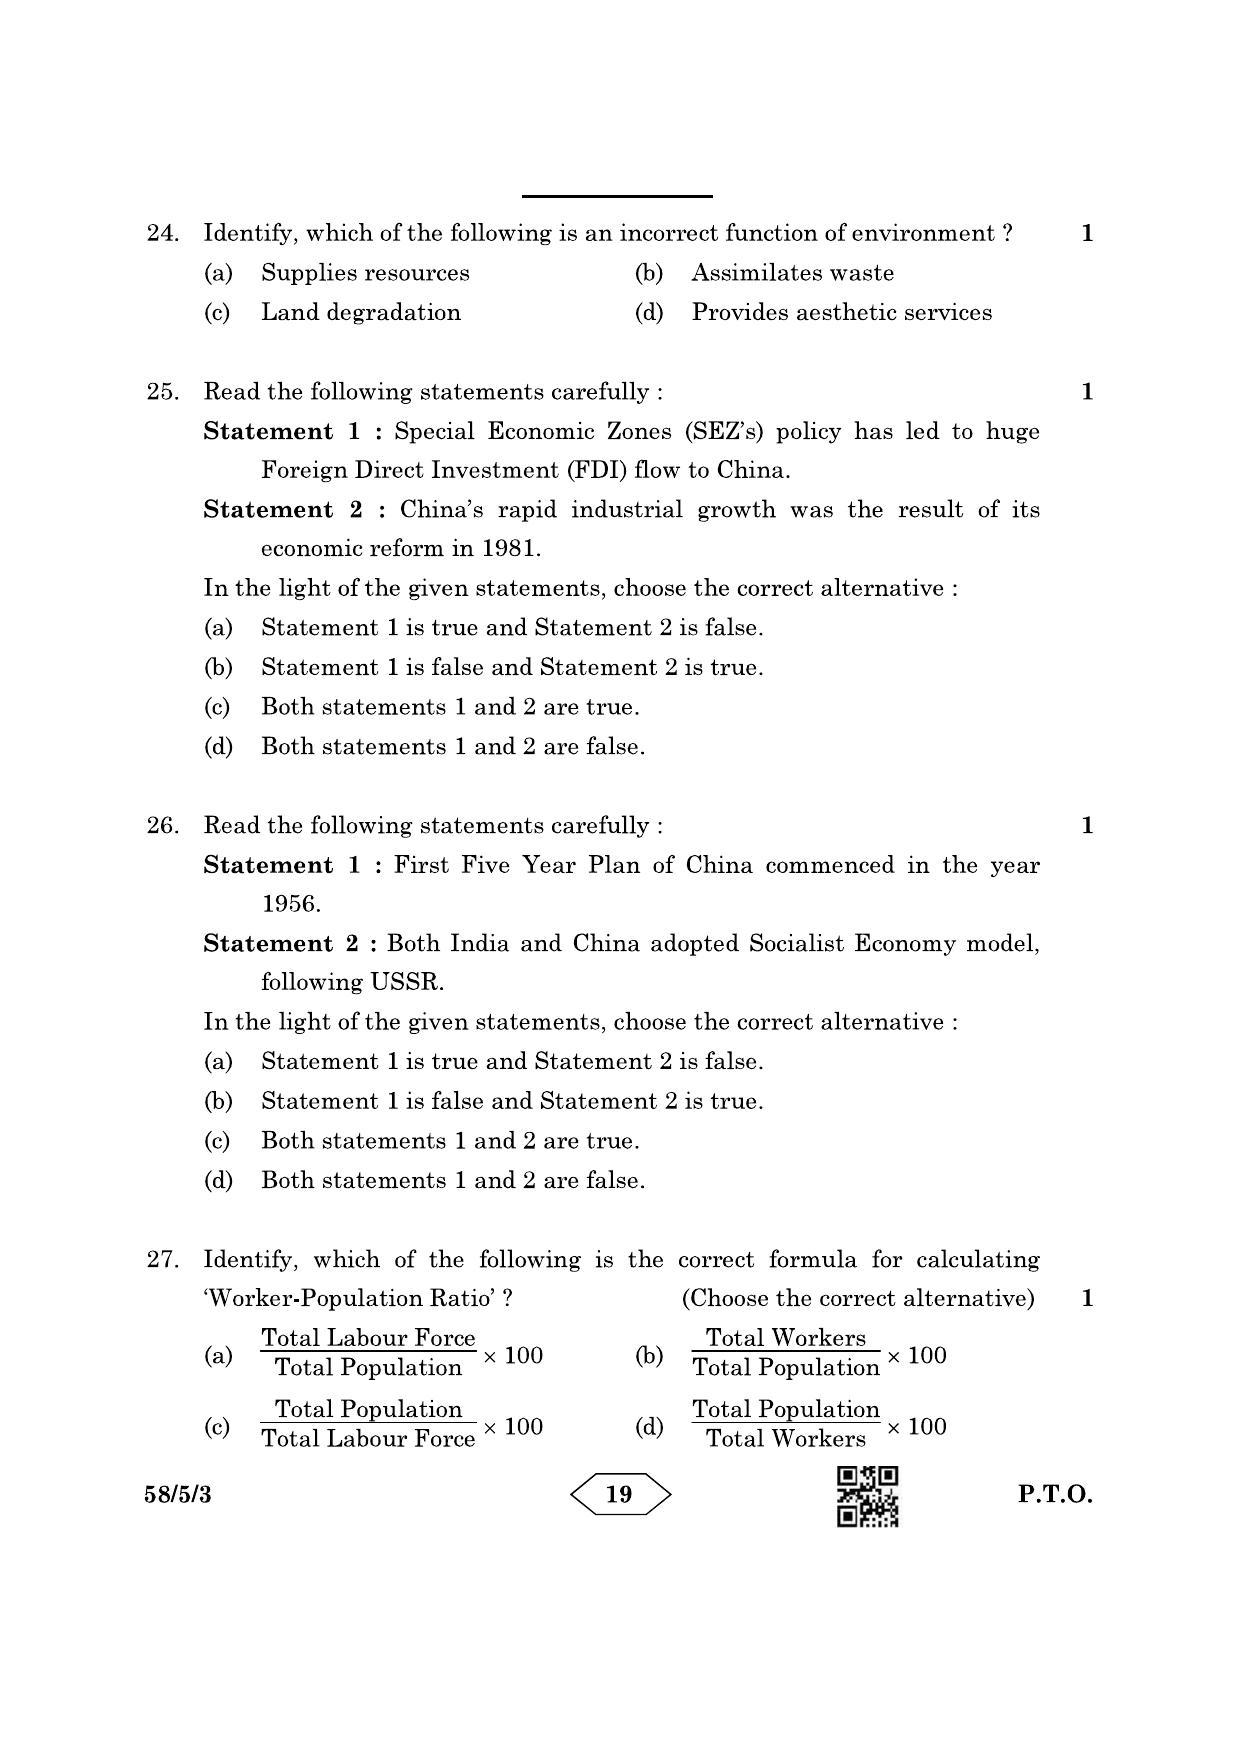 CBSE Class 12 58-5-3 Economics 2023 Question Paper - Page 19